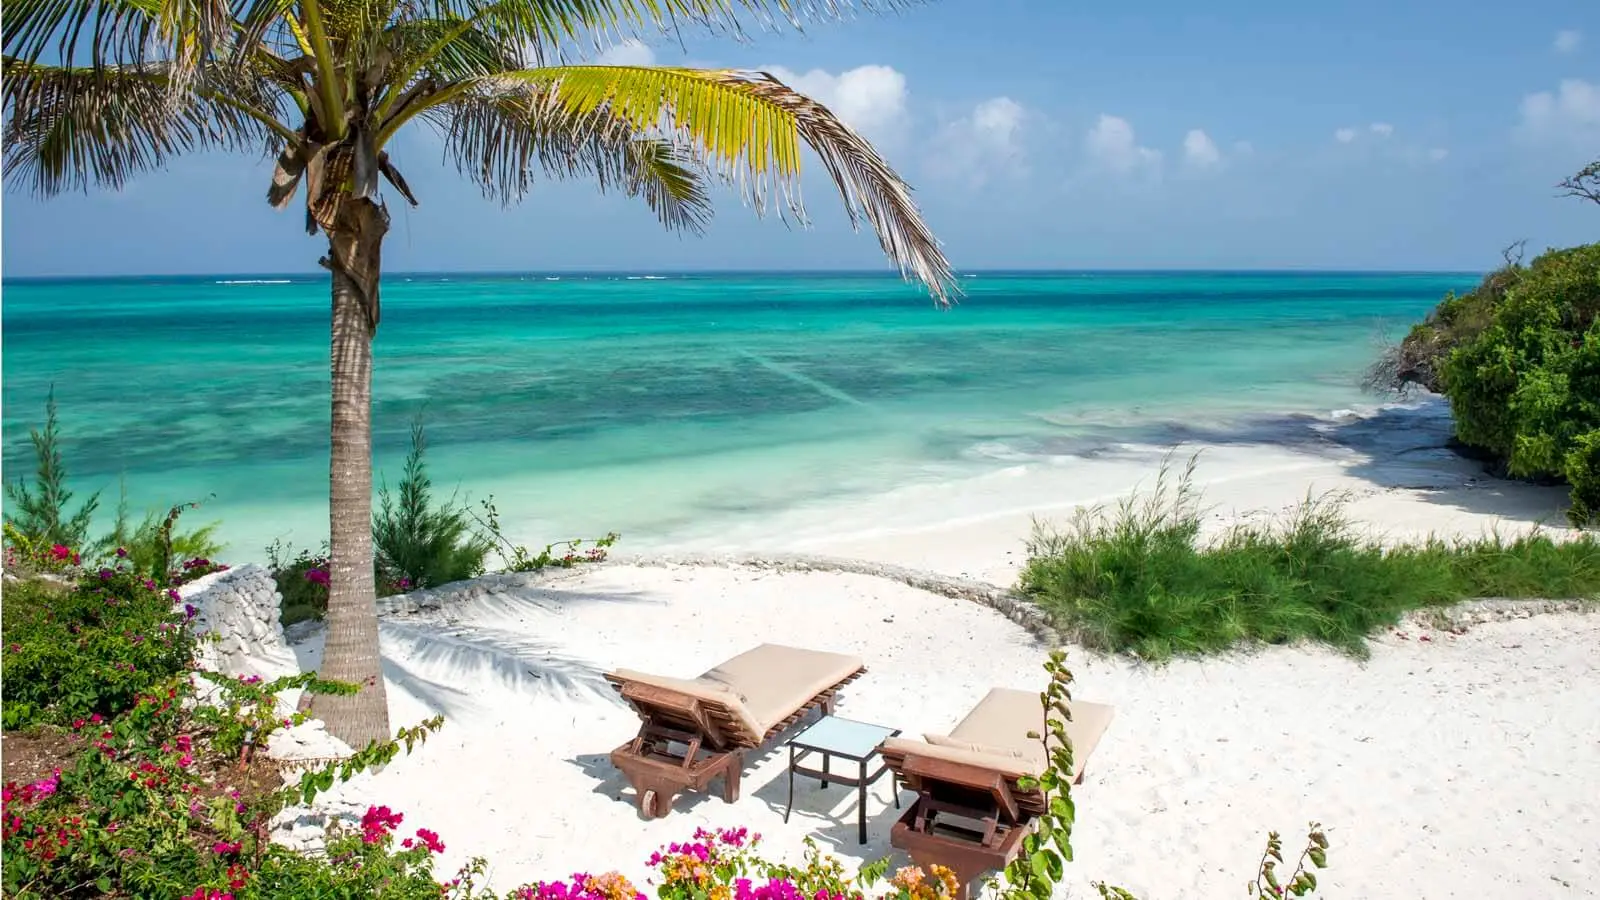 Safari and beach honeymoon packages - Mswakini Beach, Zanzibar